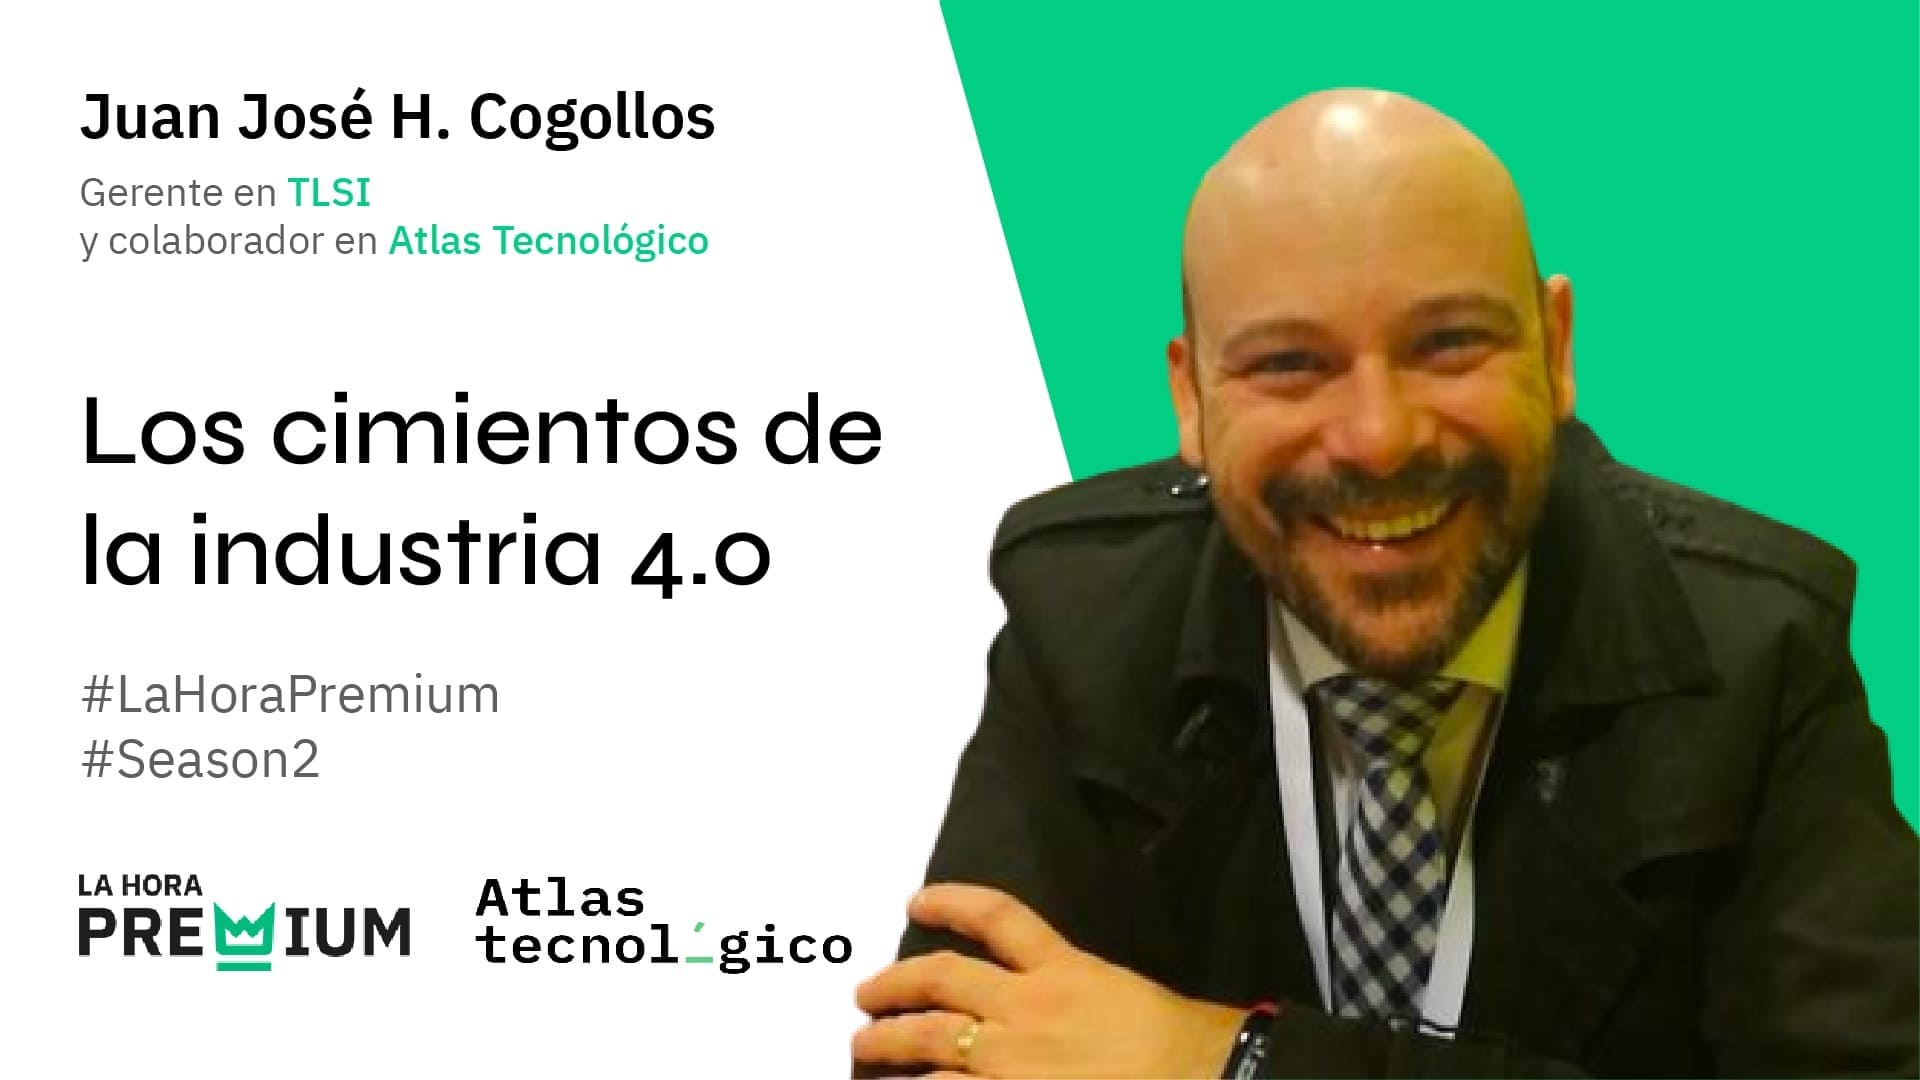 Juan José Hernández Cogollos hablará sobre los cimientos de la industria 4.0 en La Hora Premium